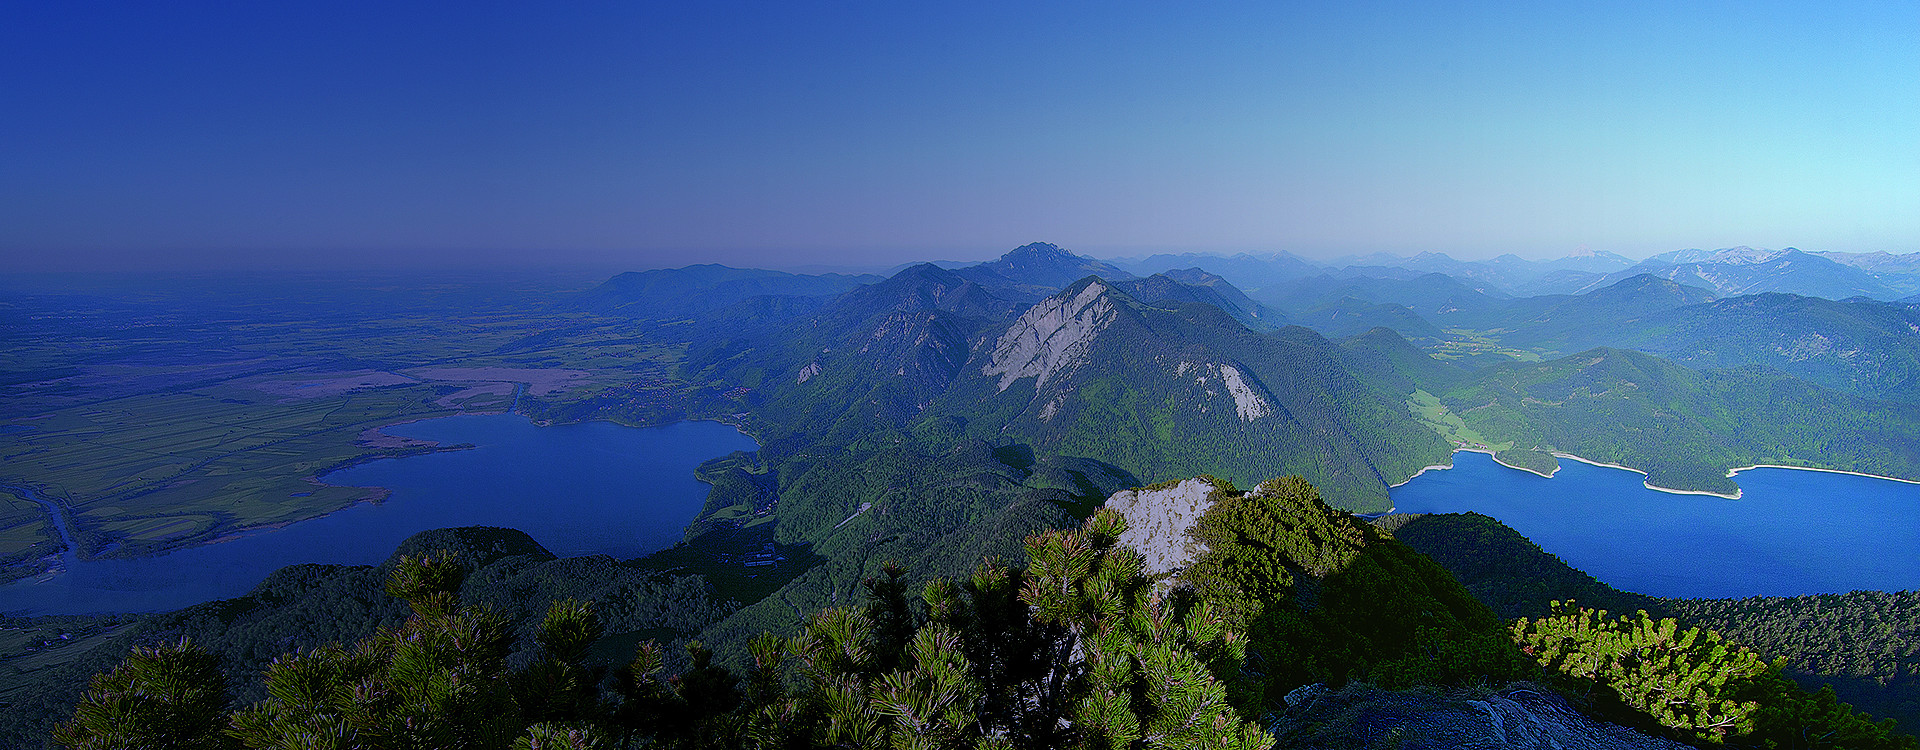 Blick vom Berg Herzogstand auf den Kochelsee and Walchensee